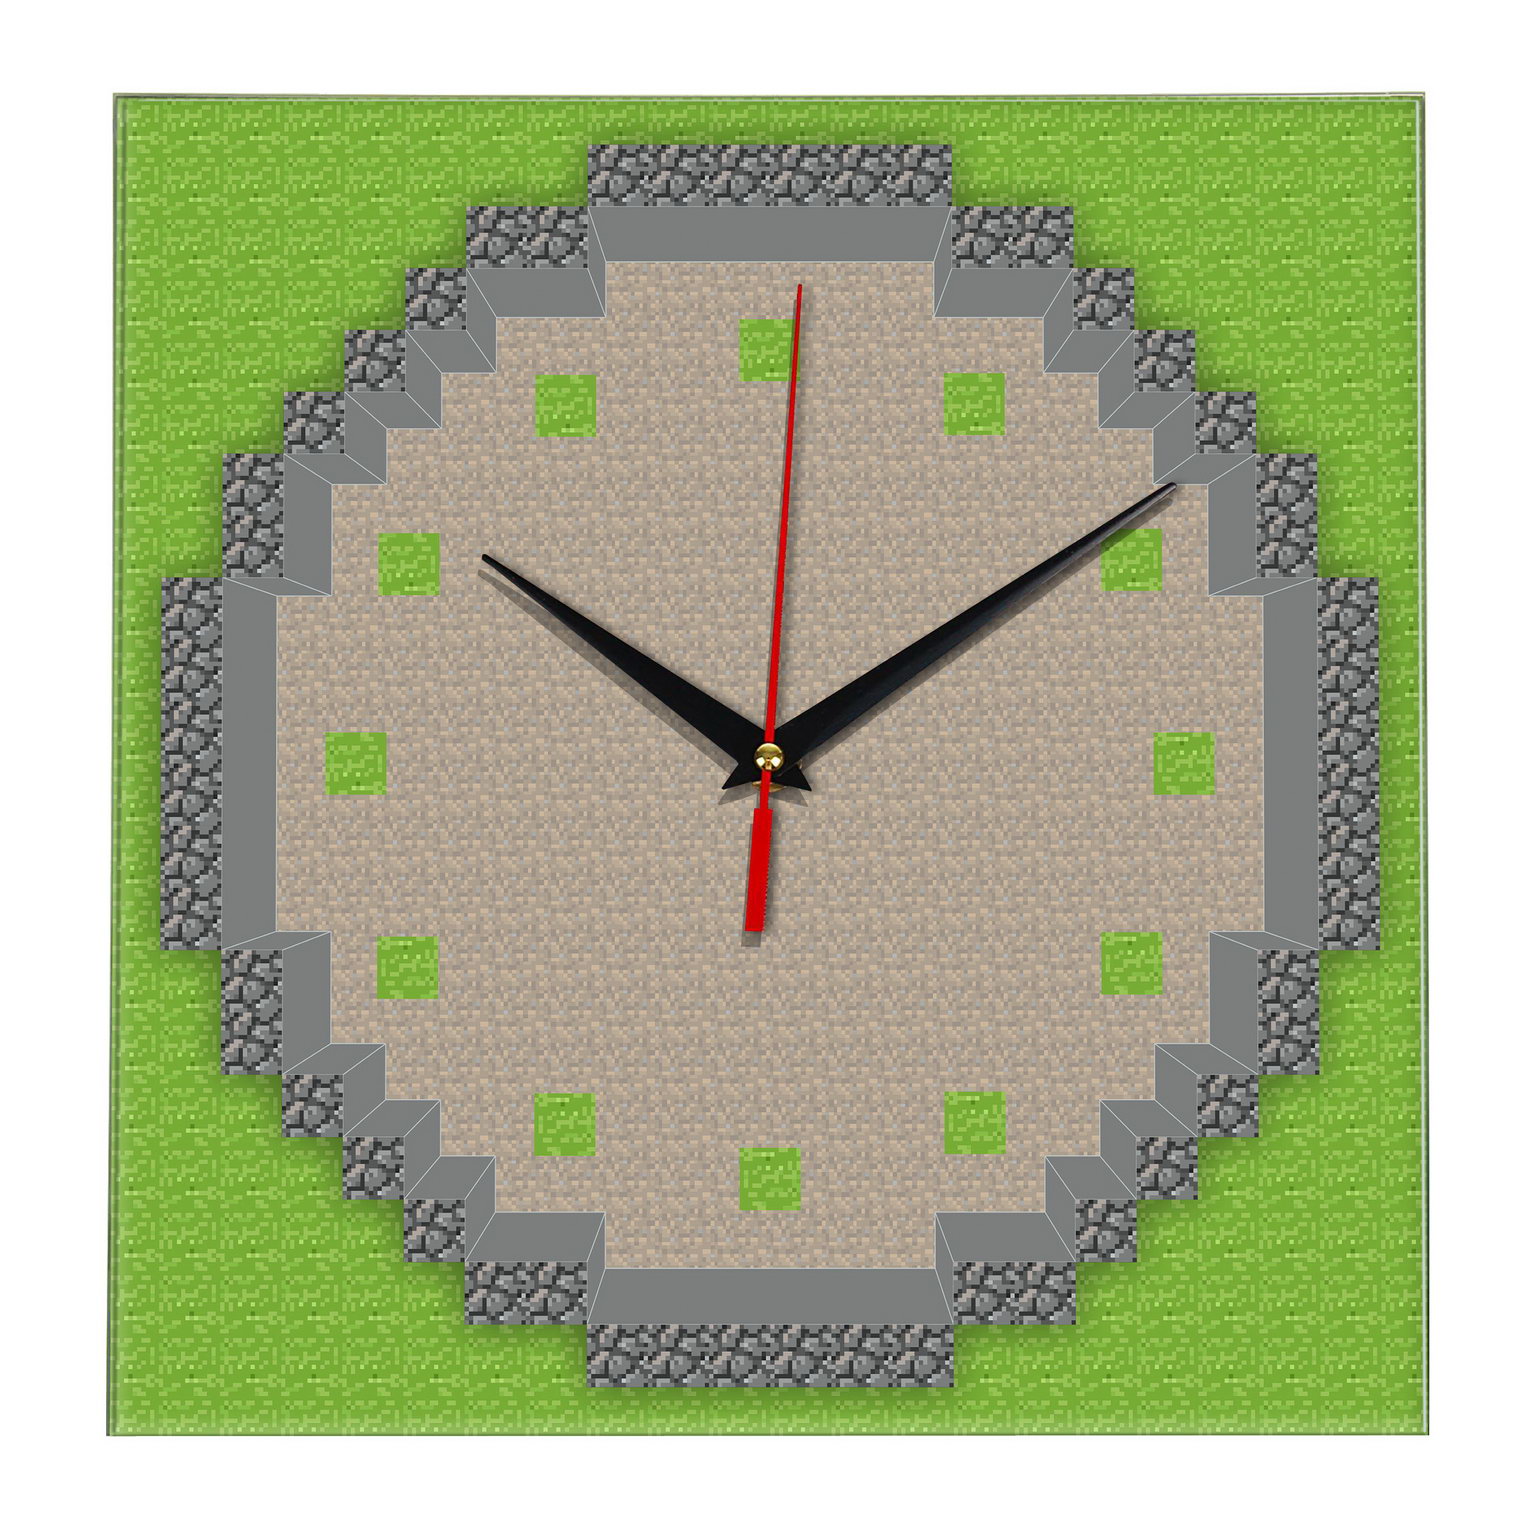 Сколько часов в майнкрафте. Minecraft часы. Часы из МАЙНКРАФТА. Квадратные настенные часы. Часы в МАЙНКРАФТЕ постройка.